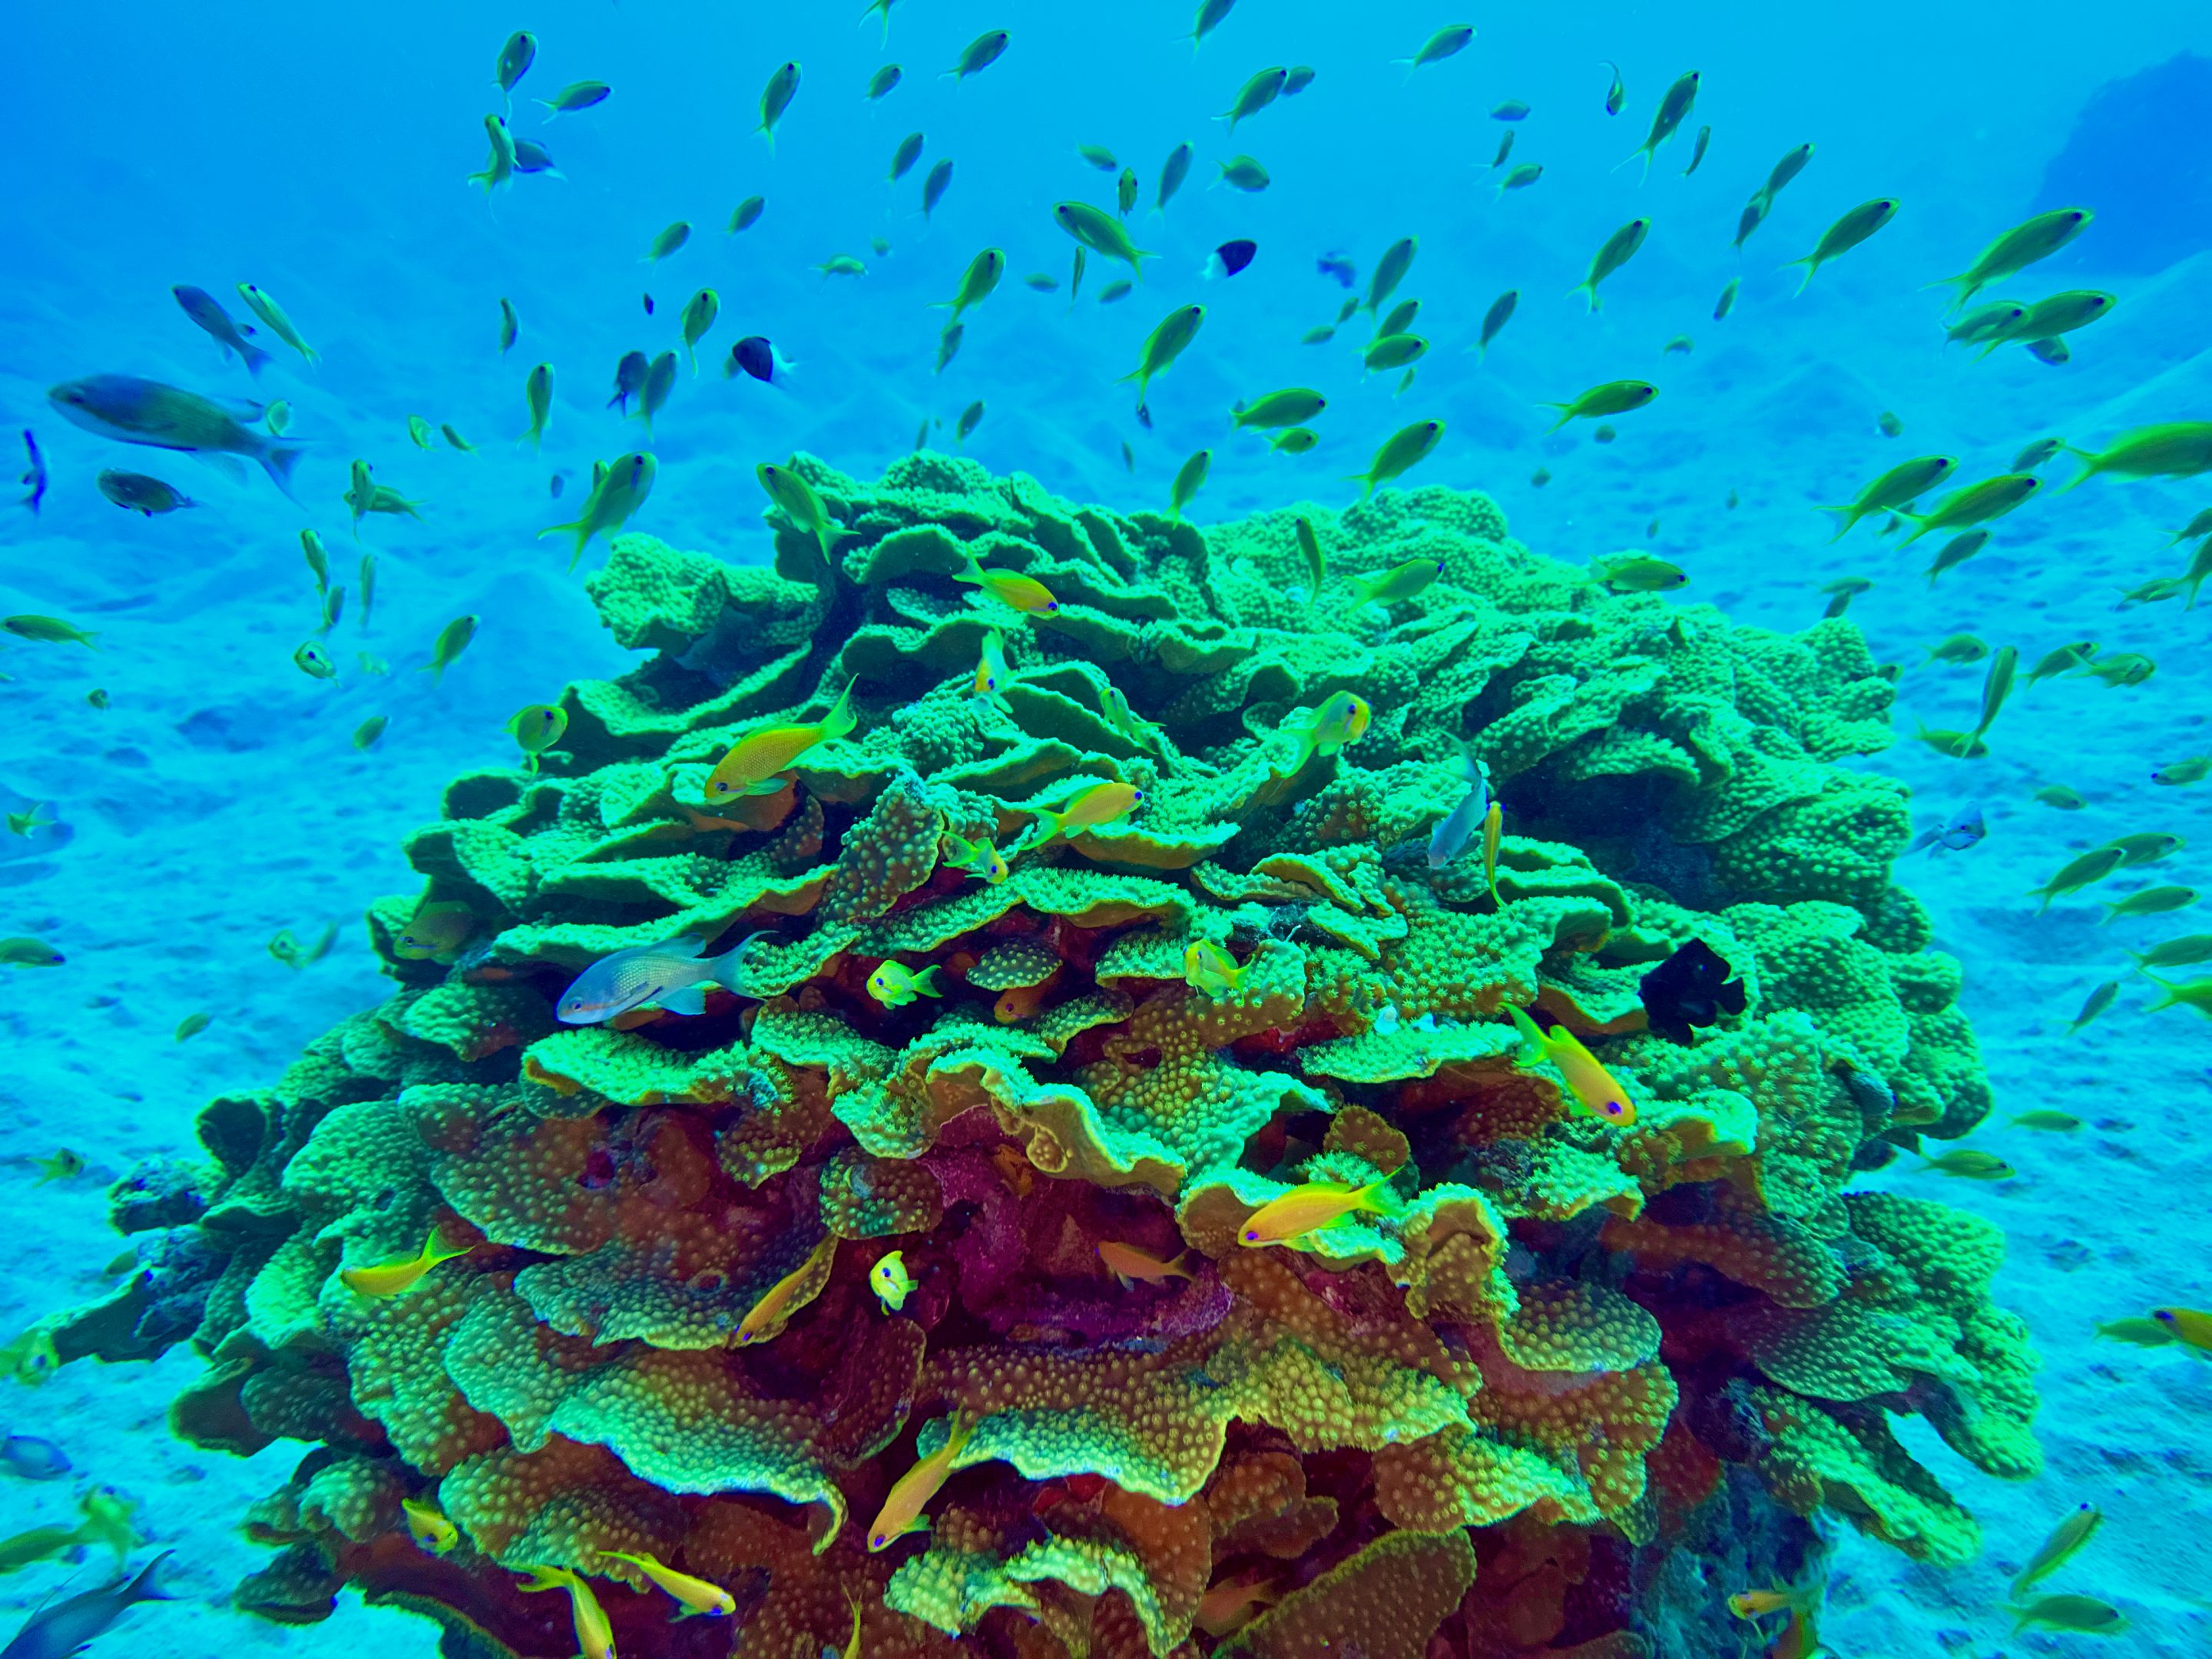 Abu Dabbab offre un monde sous-marin incroyablement impressionnant avec des coraux colorés, d'innombrables poissons et tortues.